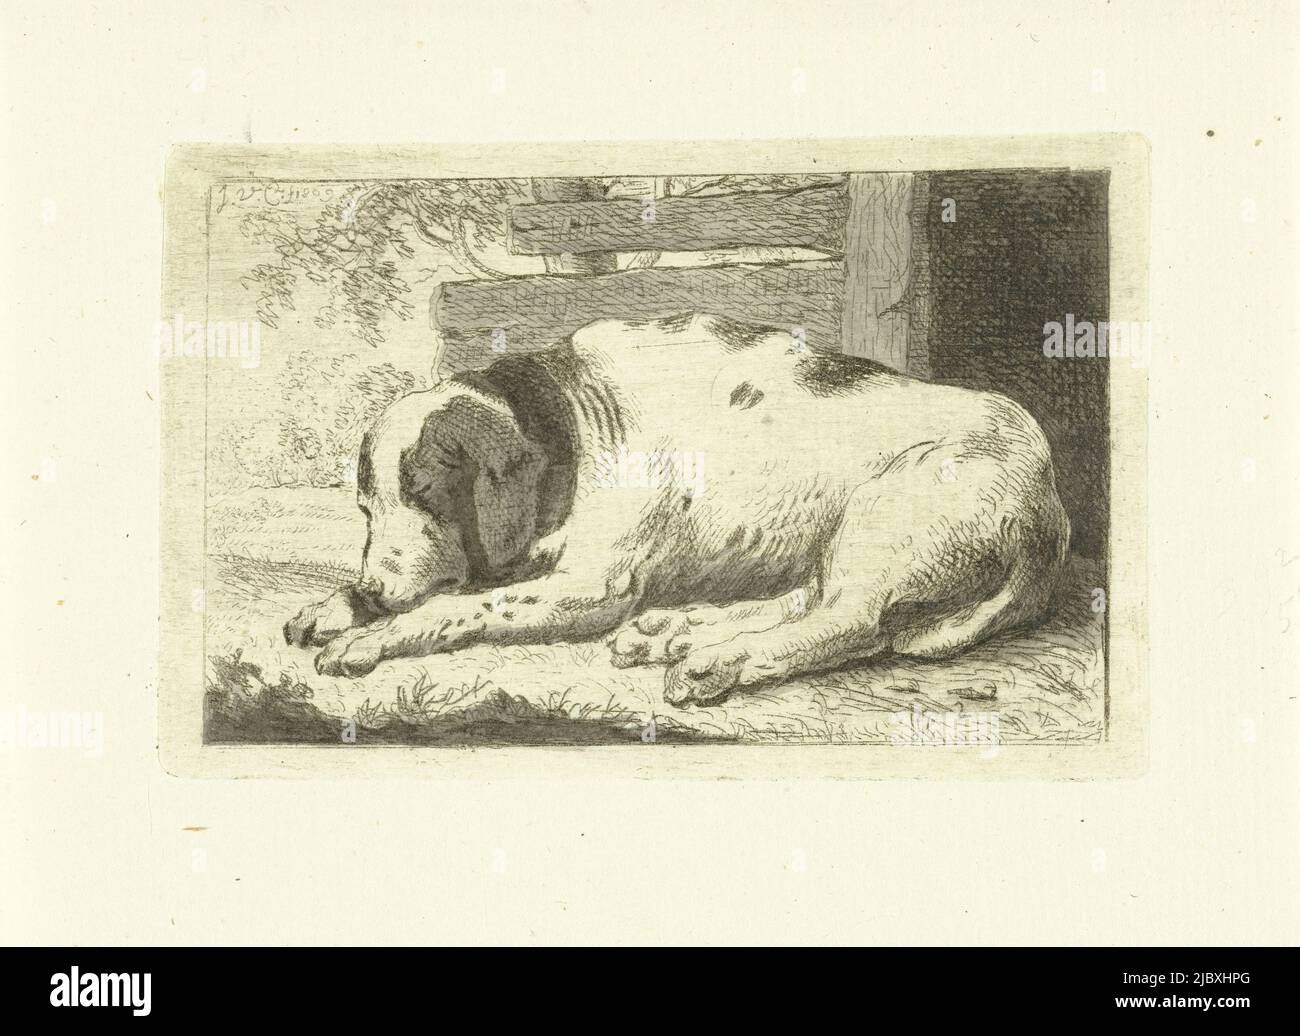 Cane da notte, stampatore: Johannes van Cuylenburgh, (menzionato sull'oggetto), Johannes van Cuylenburgh, Olanda, 1809, carta, incisione, pennello, h 65 mm x l 101 mm Foto Stock